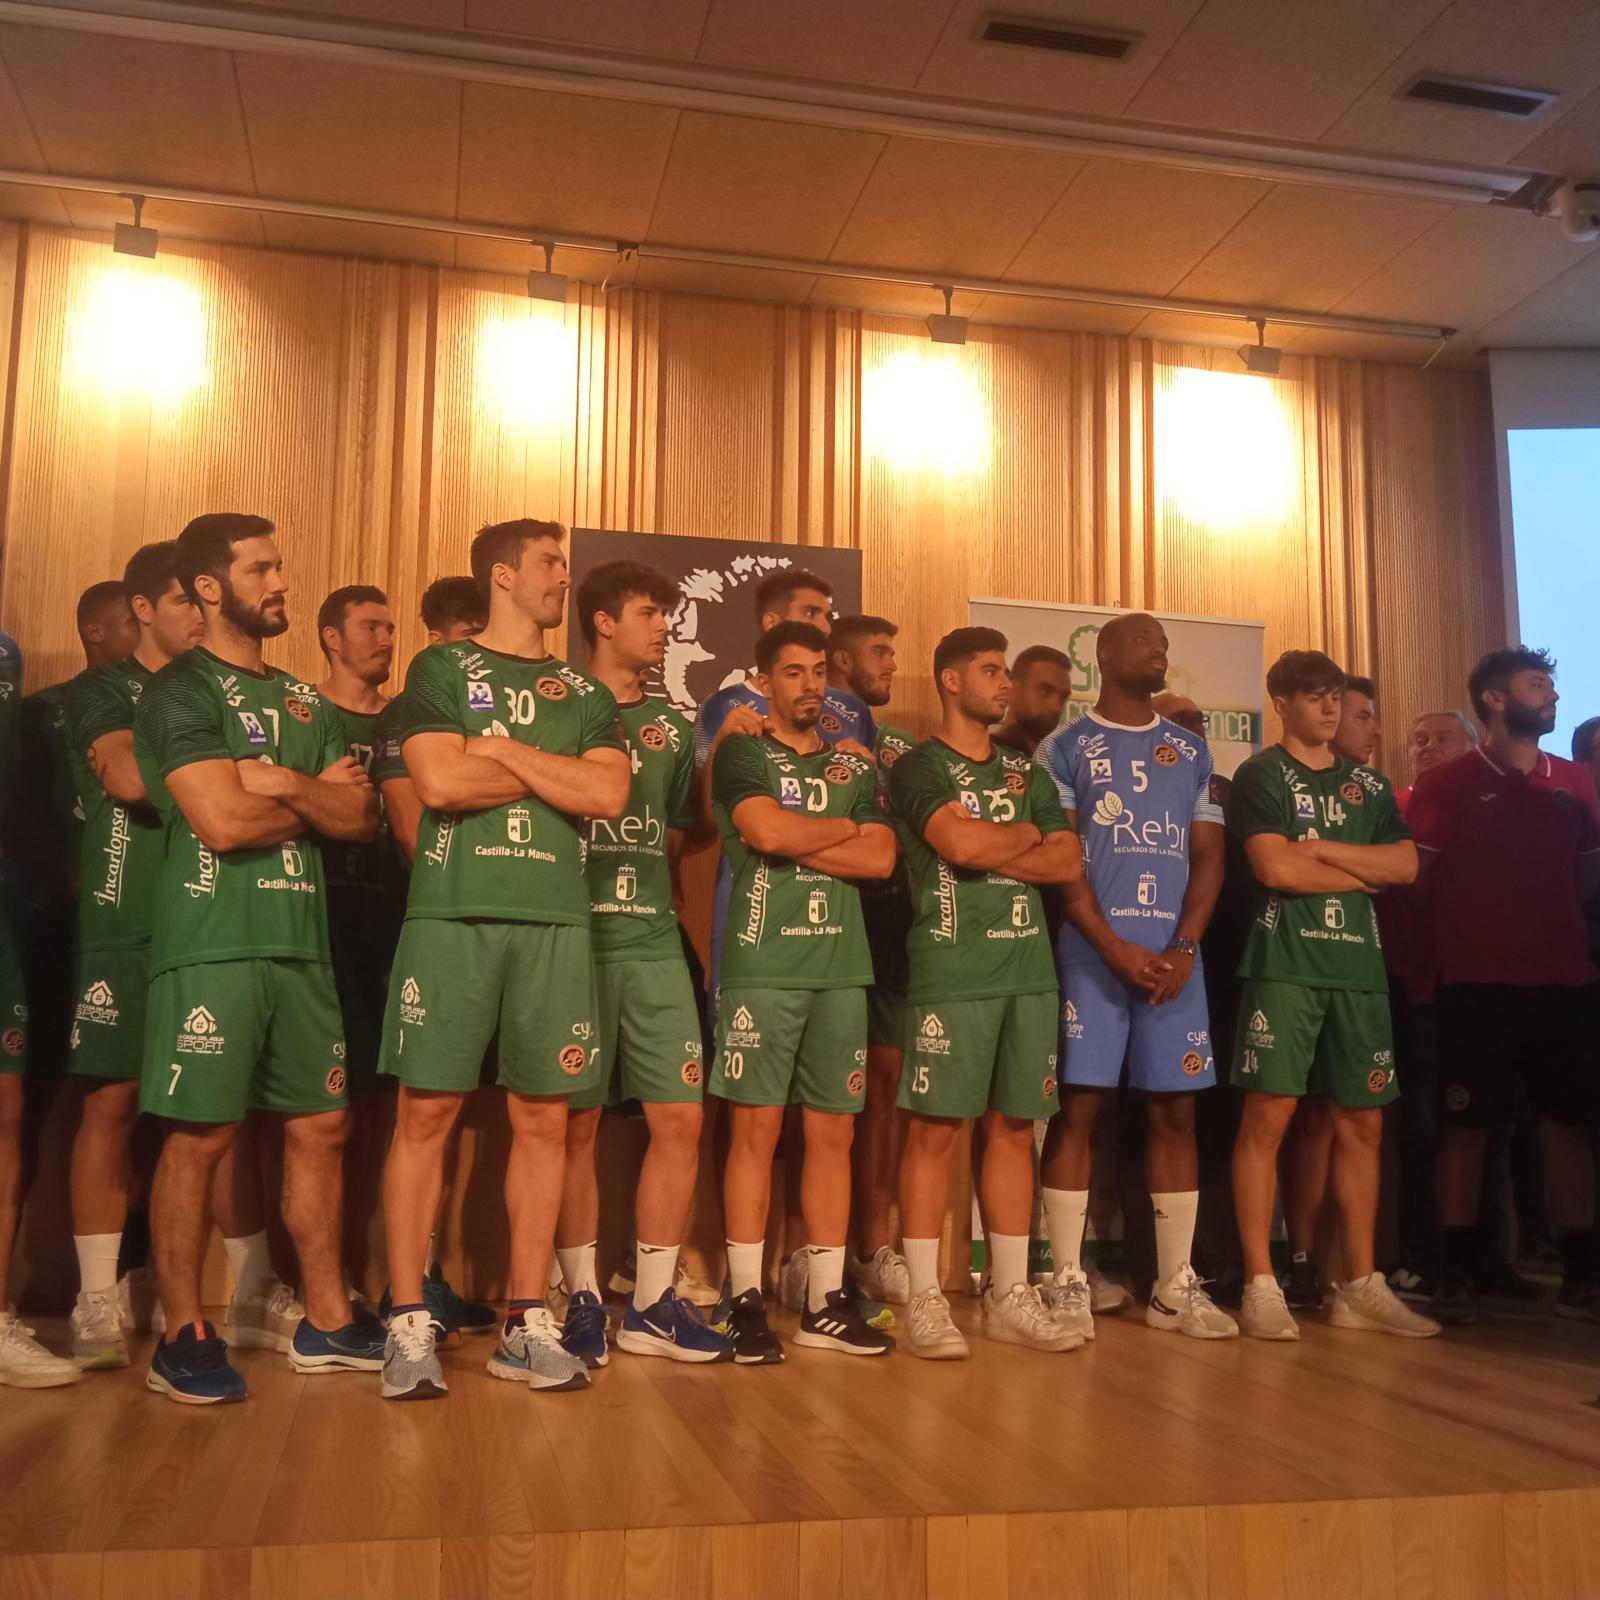 Presentación del equipo Rebi Balonmano Cuenca-2